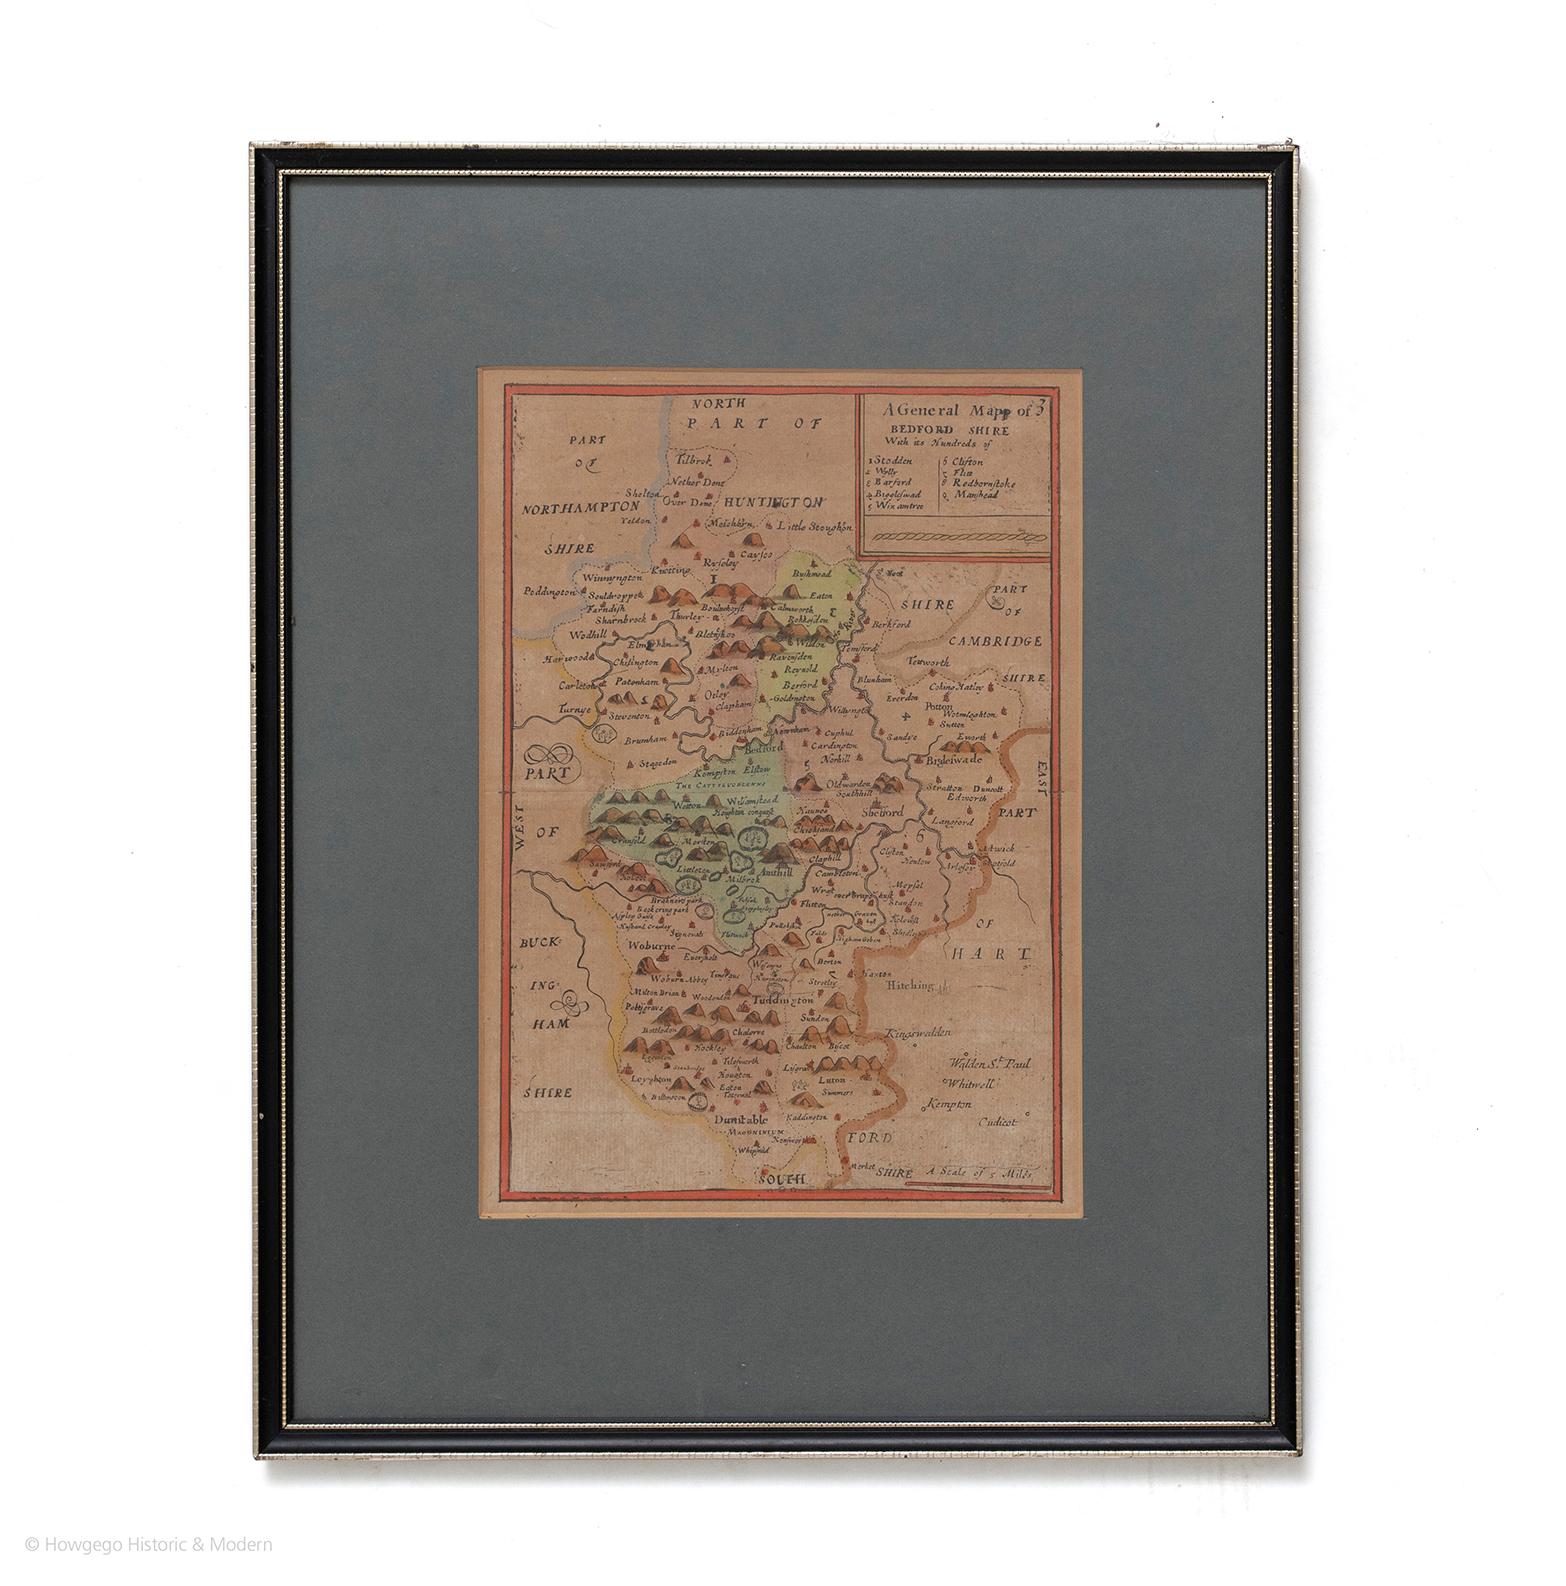 Une carte générale du Bedfordshire avec ses centaines d'habitants
Une échelle de 5 miles
dans le support vert d'origine et le cadre traditionnel noir et or.
carte charmante avec de jolis détails et couleurs.